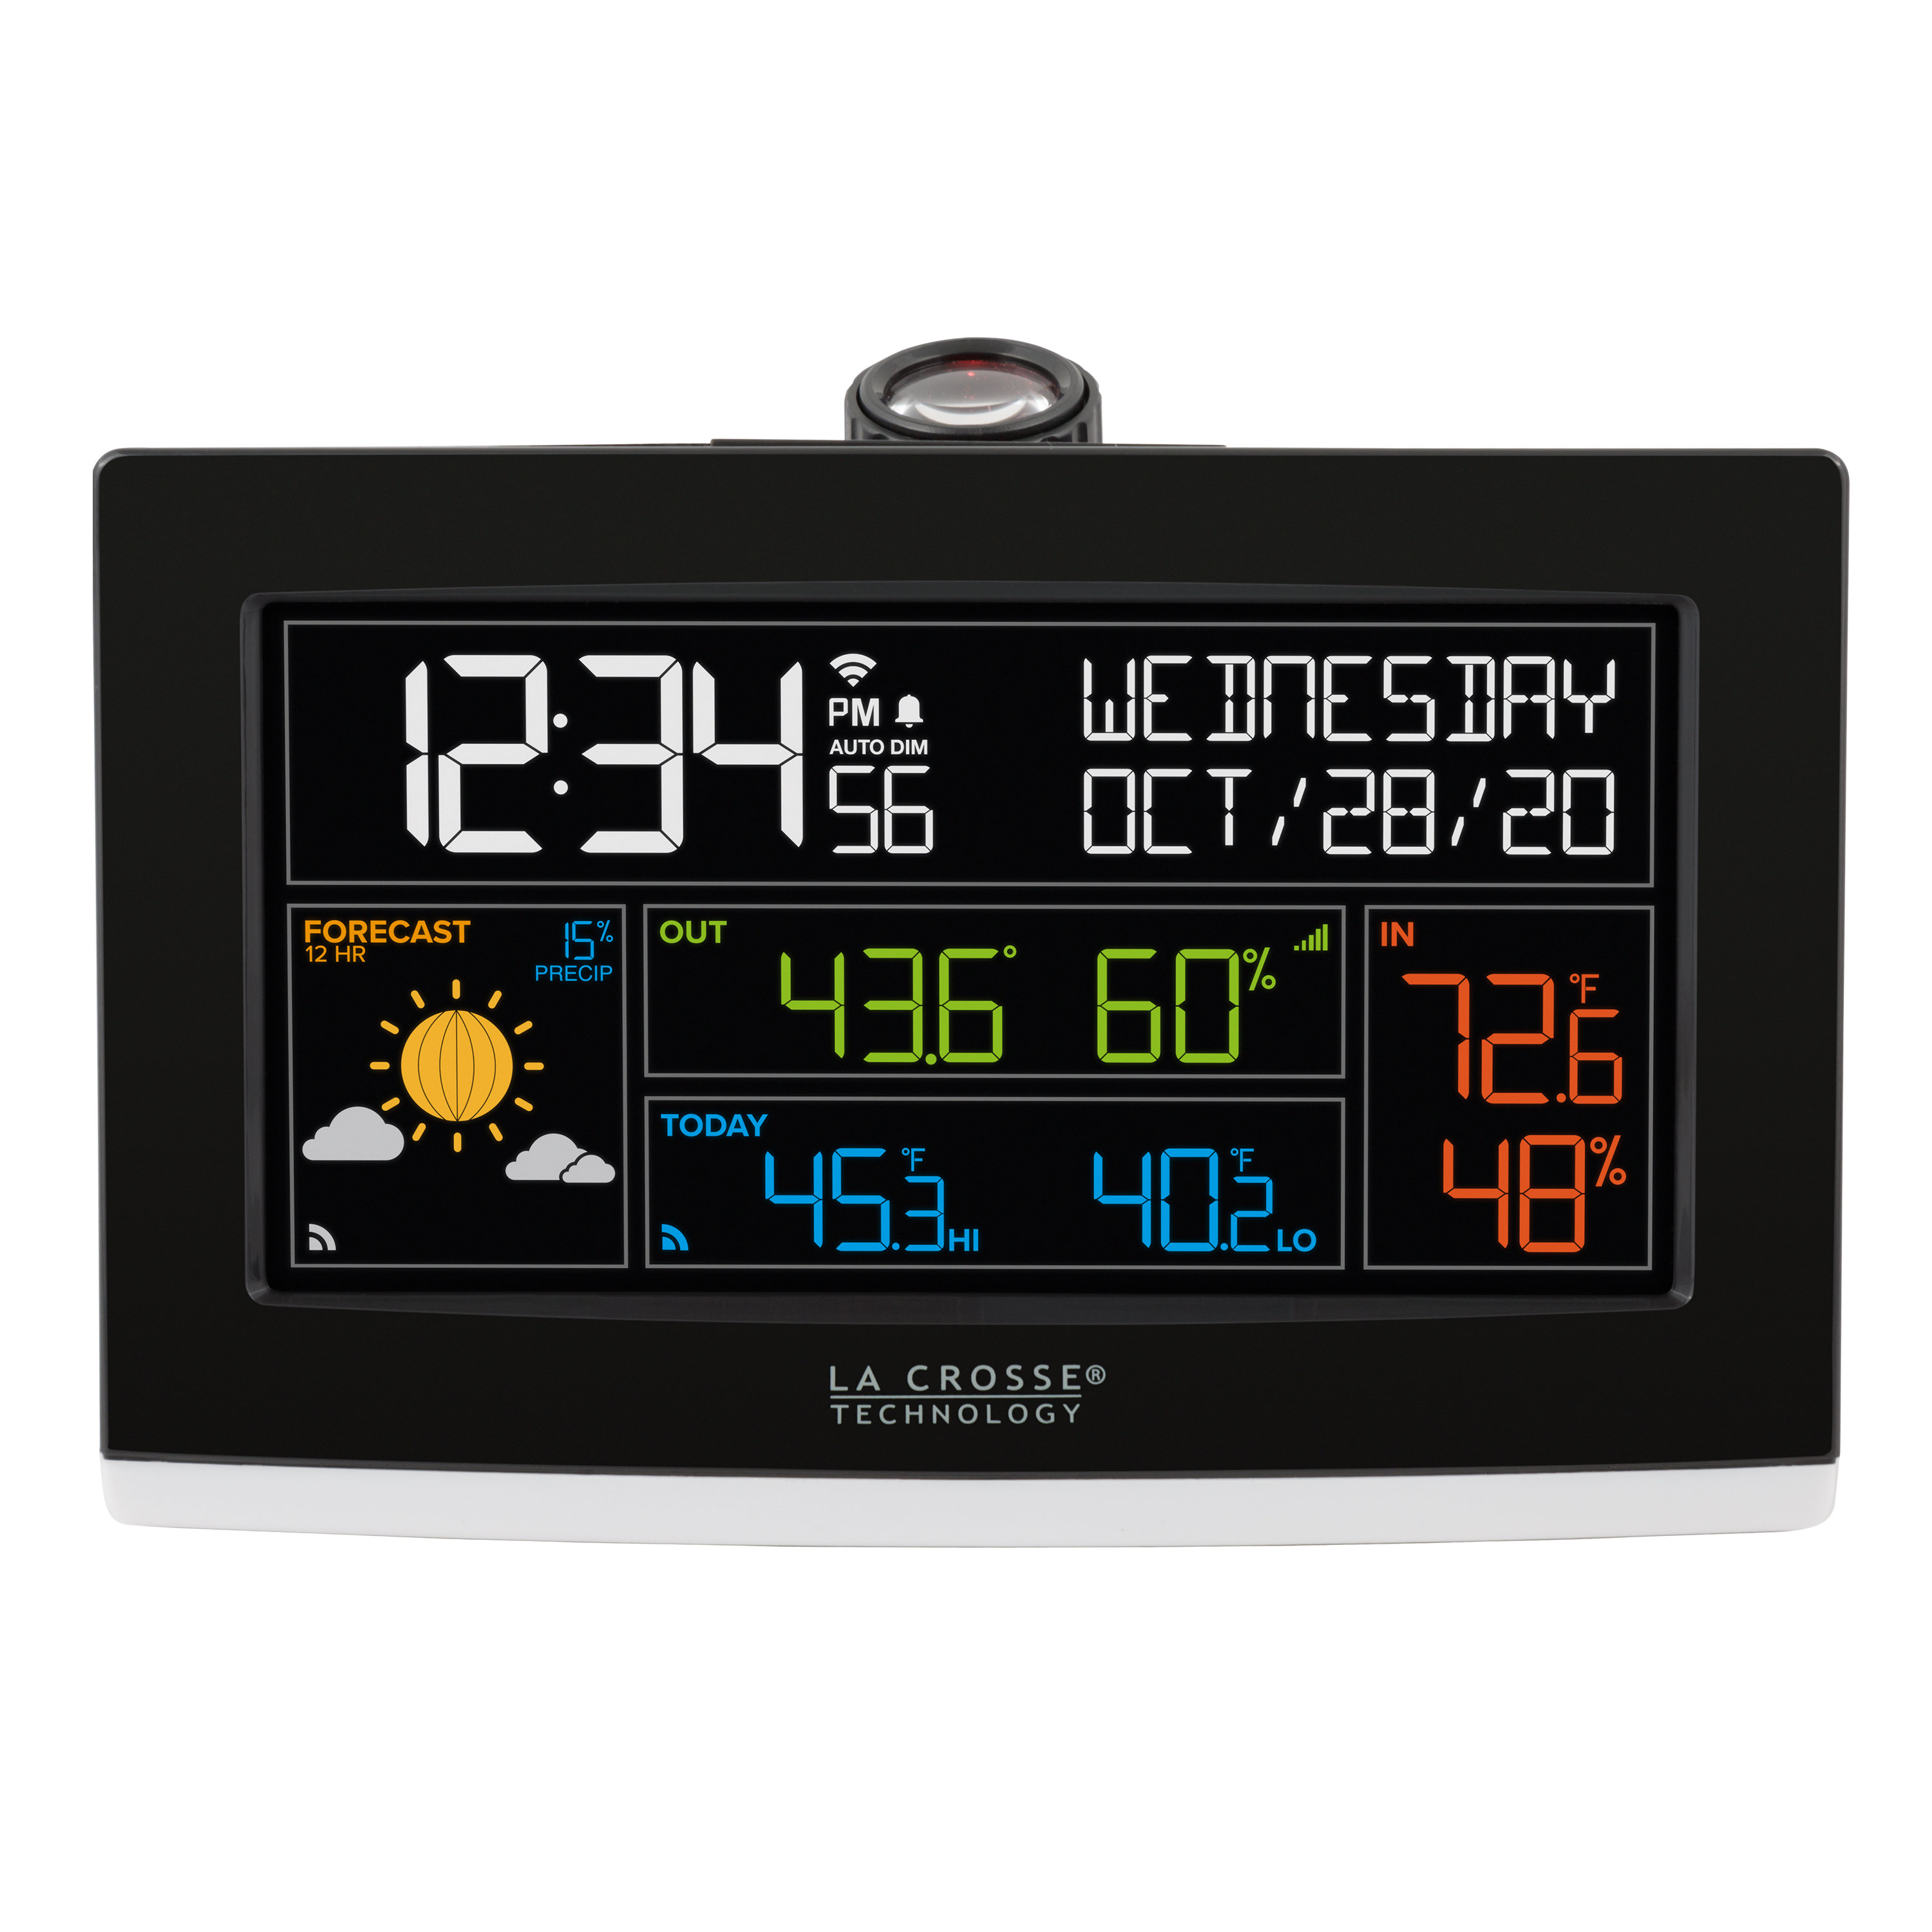 Projection Alarm Clock Outdoor Temperature